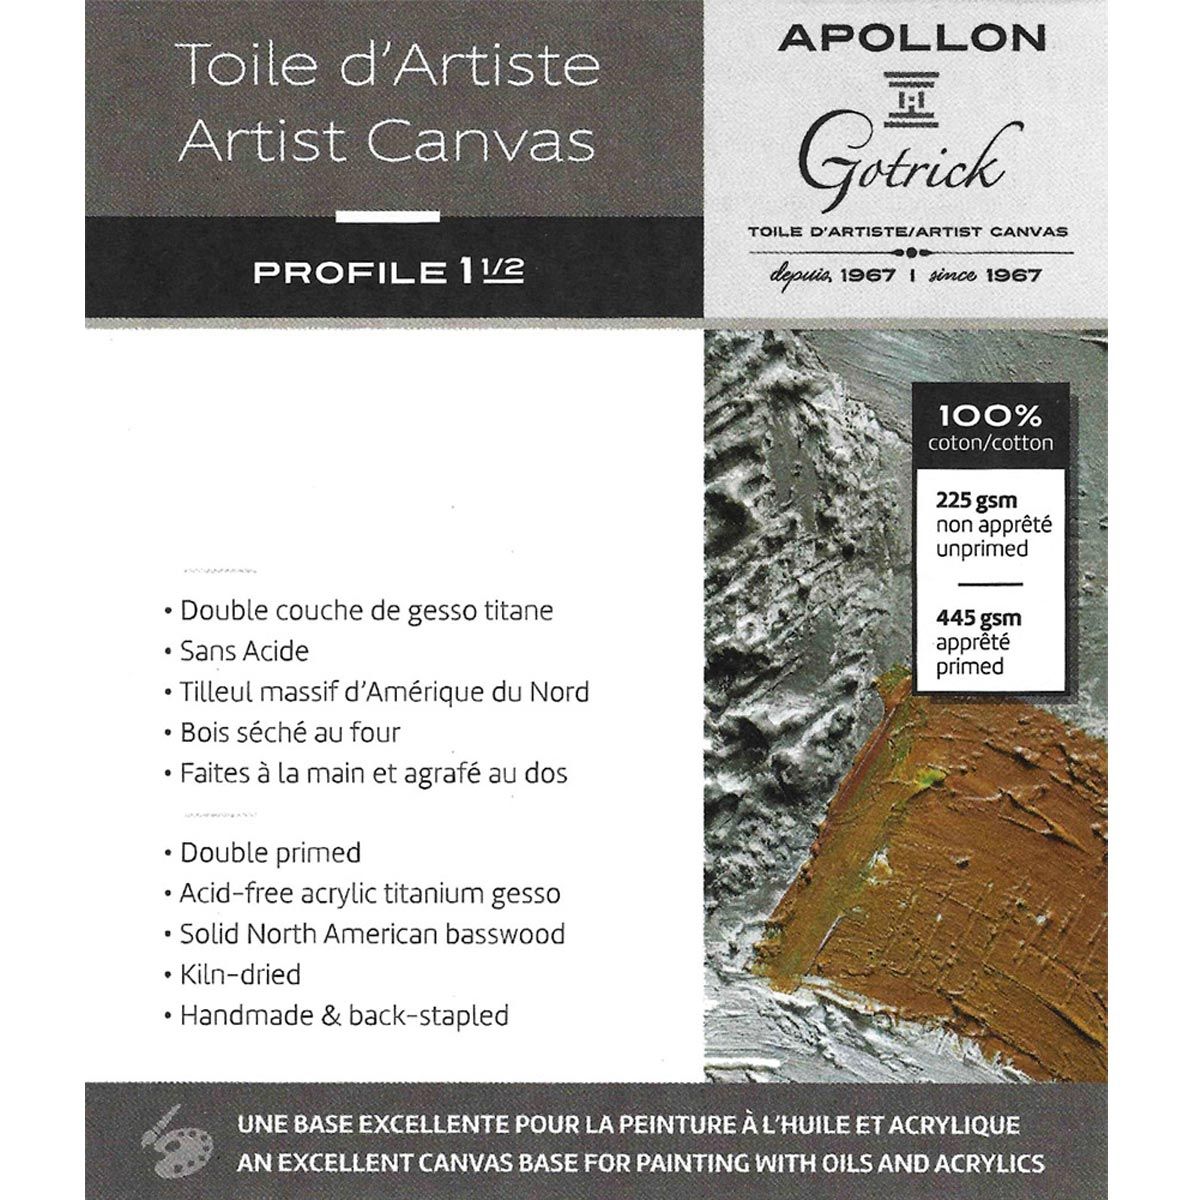 Apollon Gotrick Gallery Artist Canvas Profile 1½" - 16" x 20"